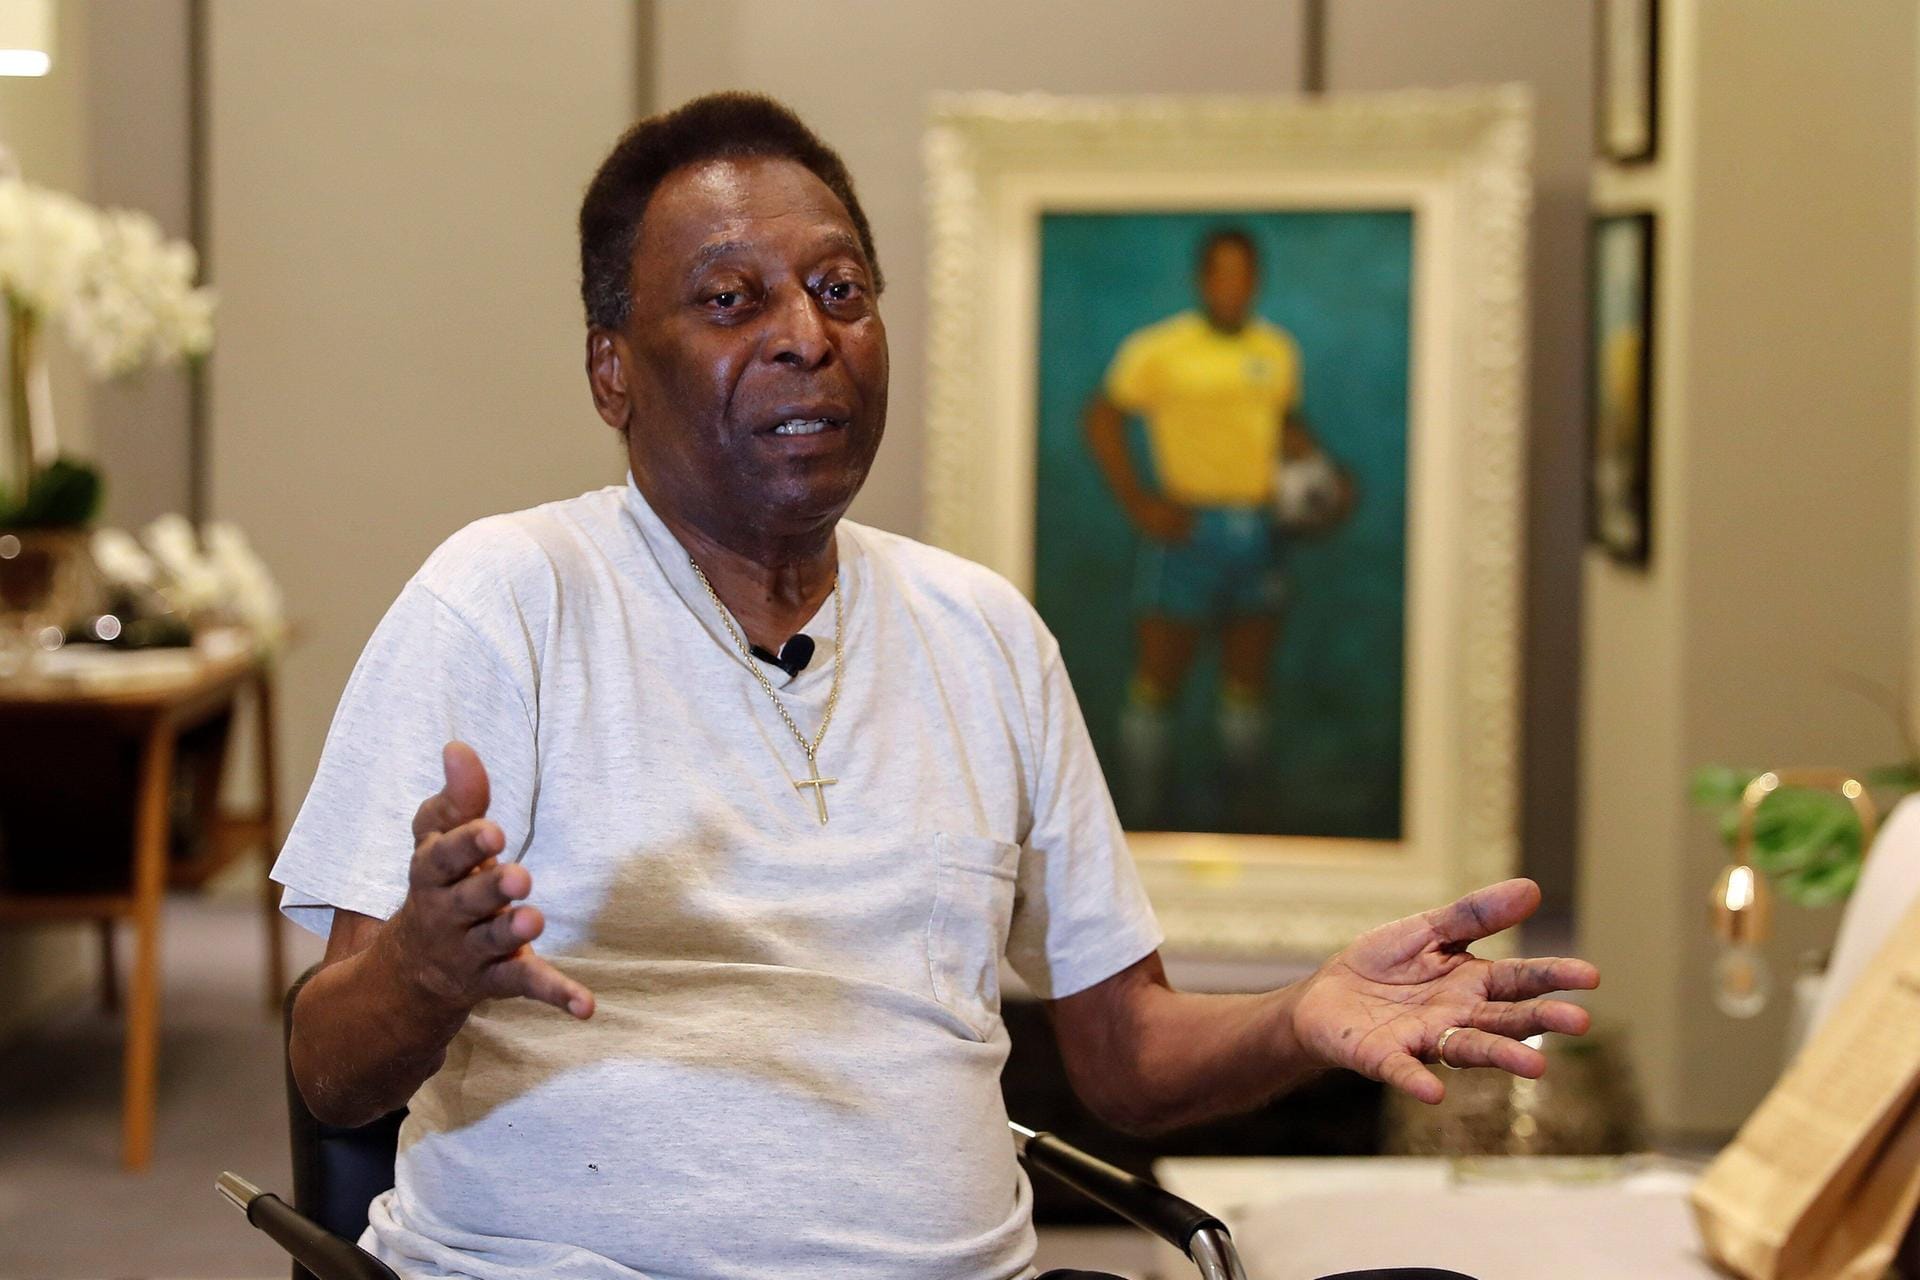 Pelé im November 2019: Seit mehreren Jahren hat die Ikone mit gesundheitlichen Problemen zu kämpfen, zuletzt wurde über eine Depression spekuliert. "Ich habe meine guten wie auch meine schlechten Tage", sagte er dazu. "Das ist für Menschen in meinem Alter normal."